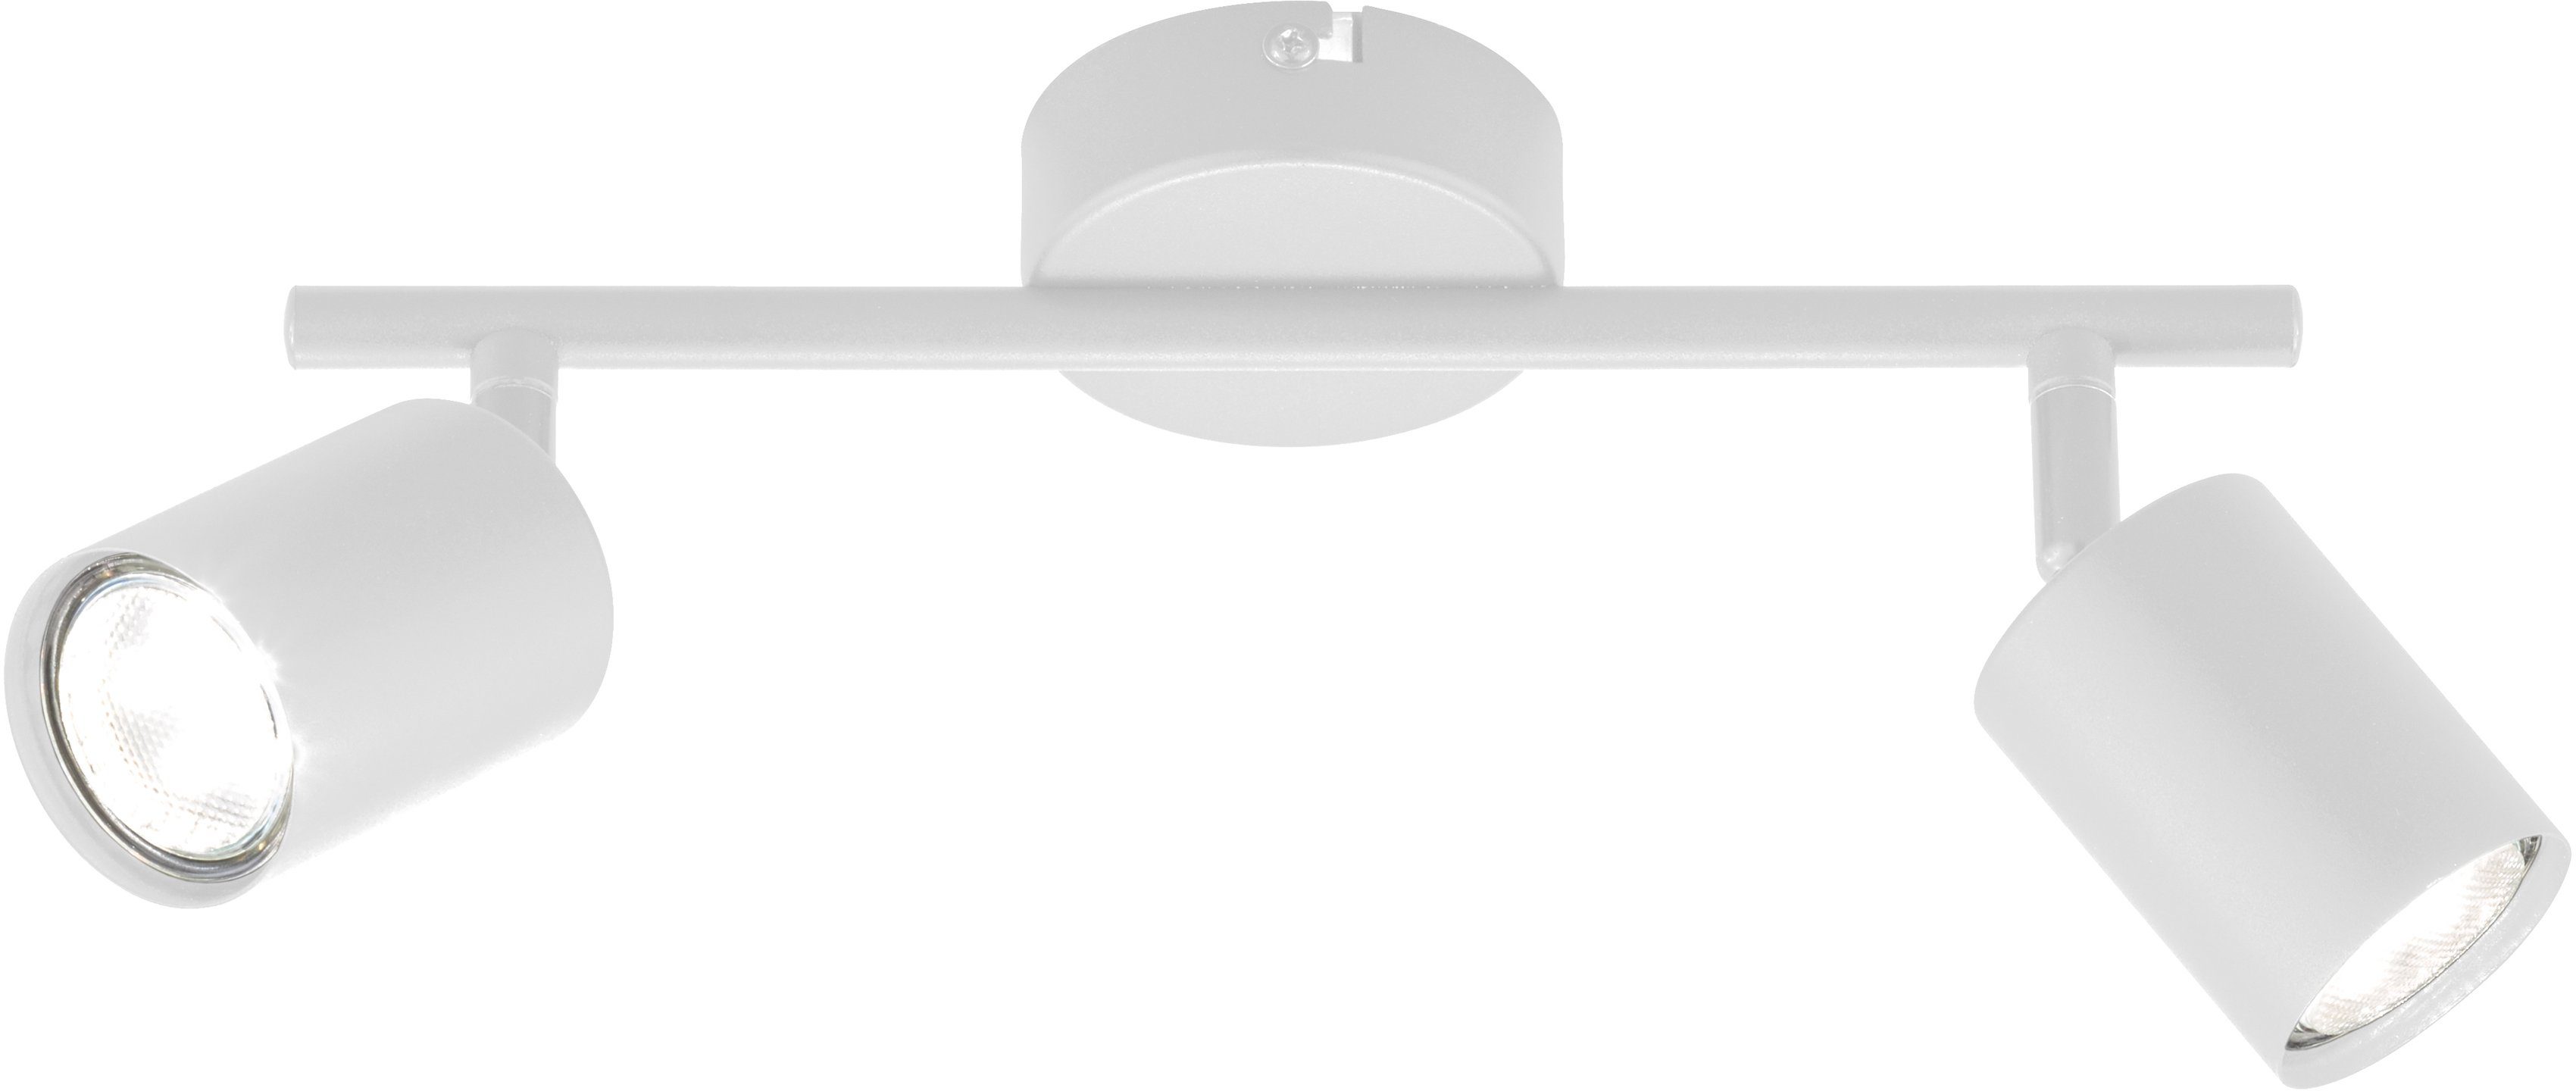 FISCHER & HONSEL Deckenspots Vano, LED wechselbar, Warmweiß | Deckenstrahler